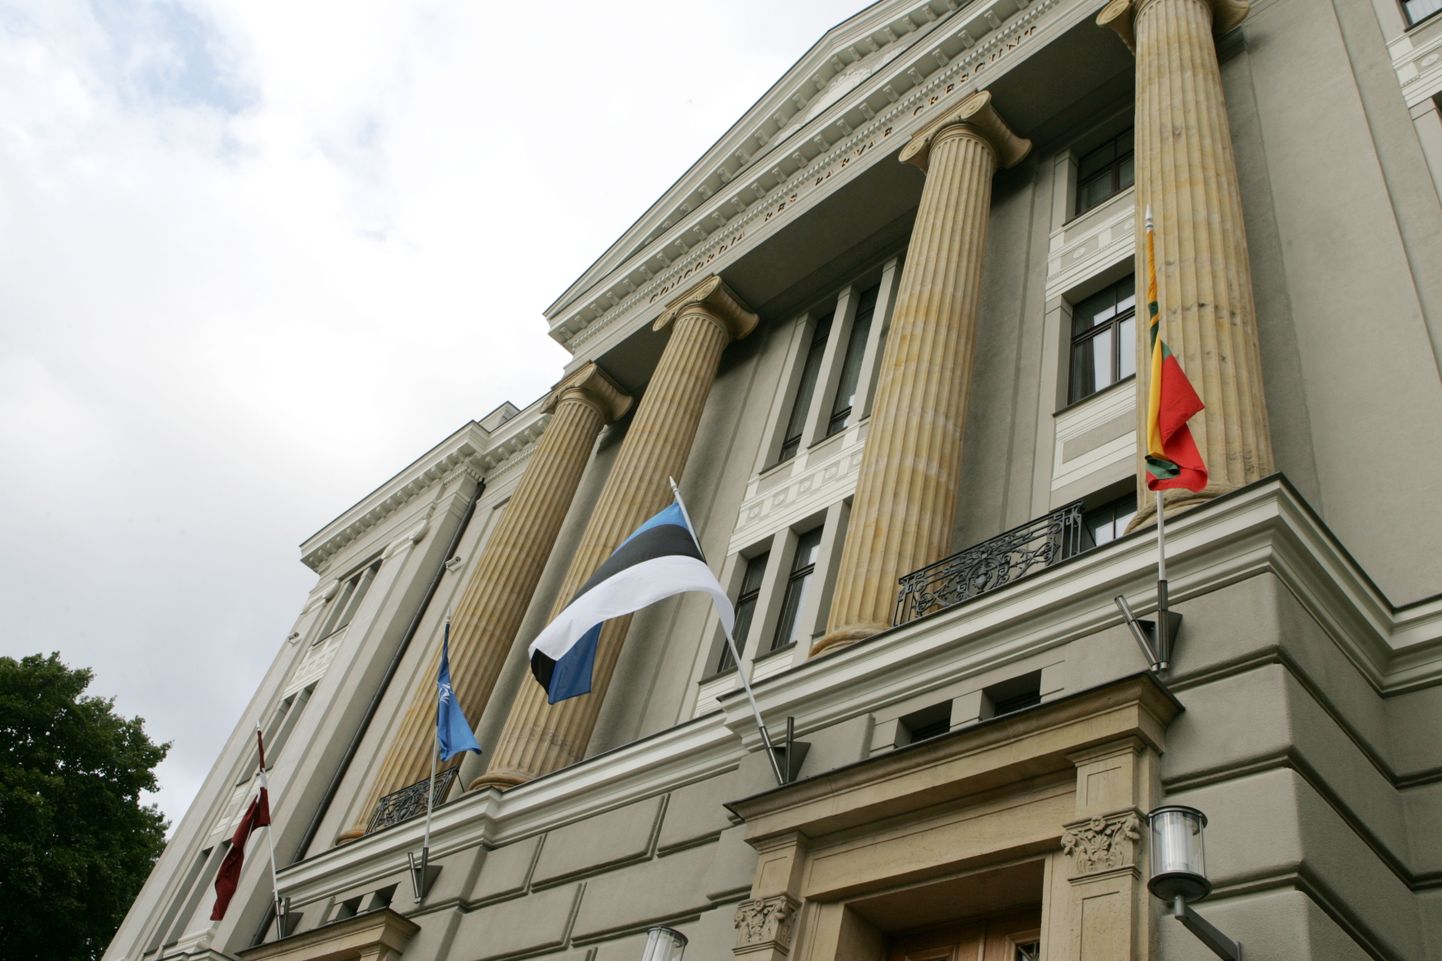 Ārlietu ministrijas ēka ar NATO un Baltijas republiku karogiem.